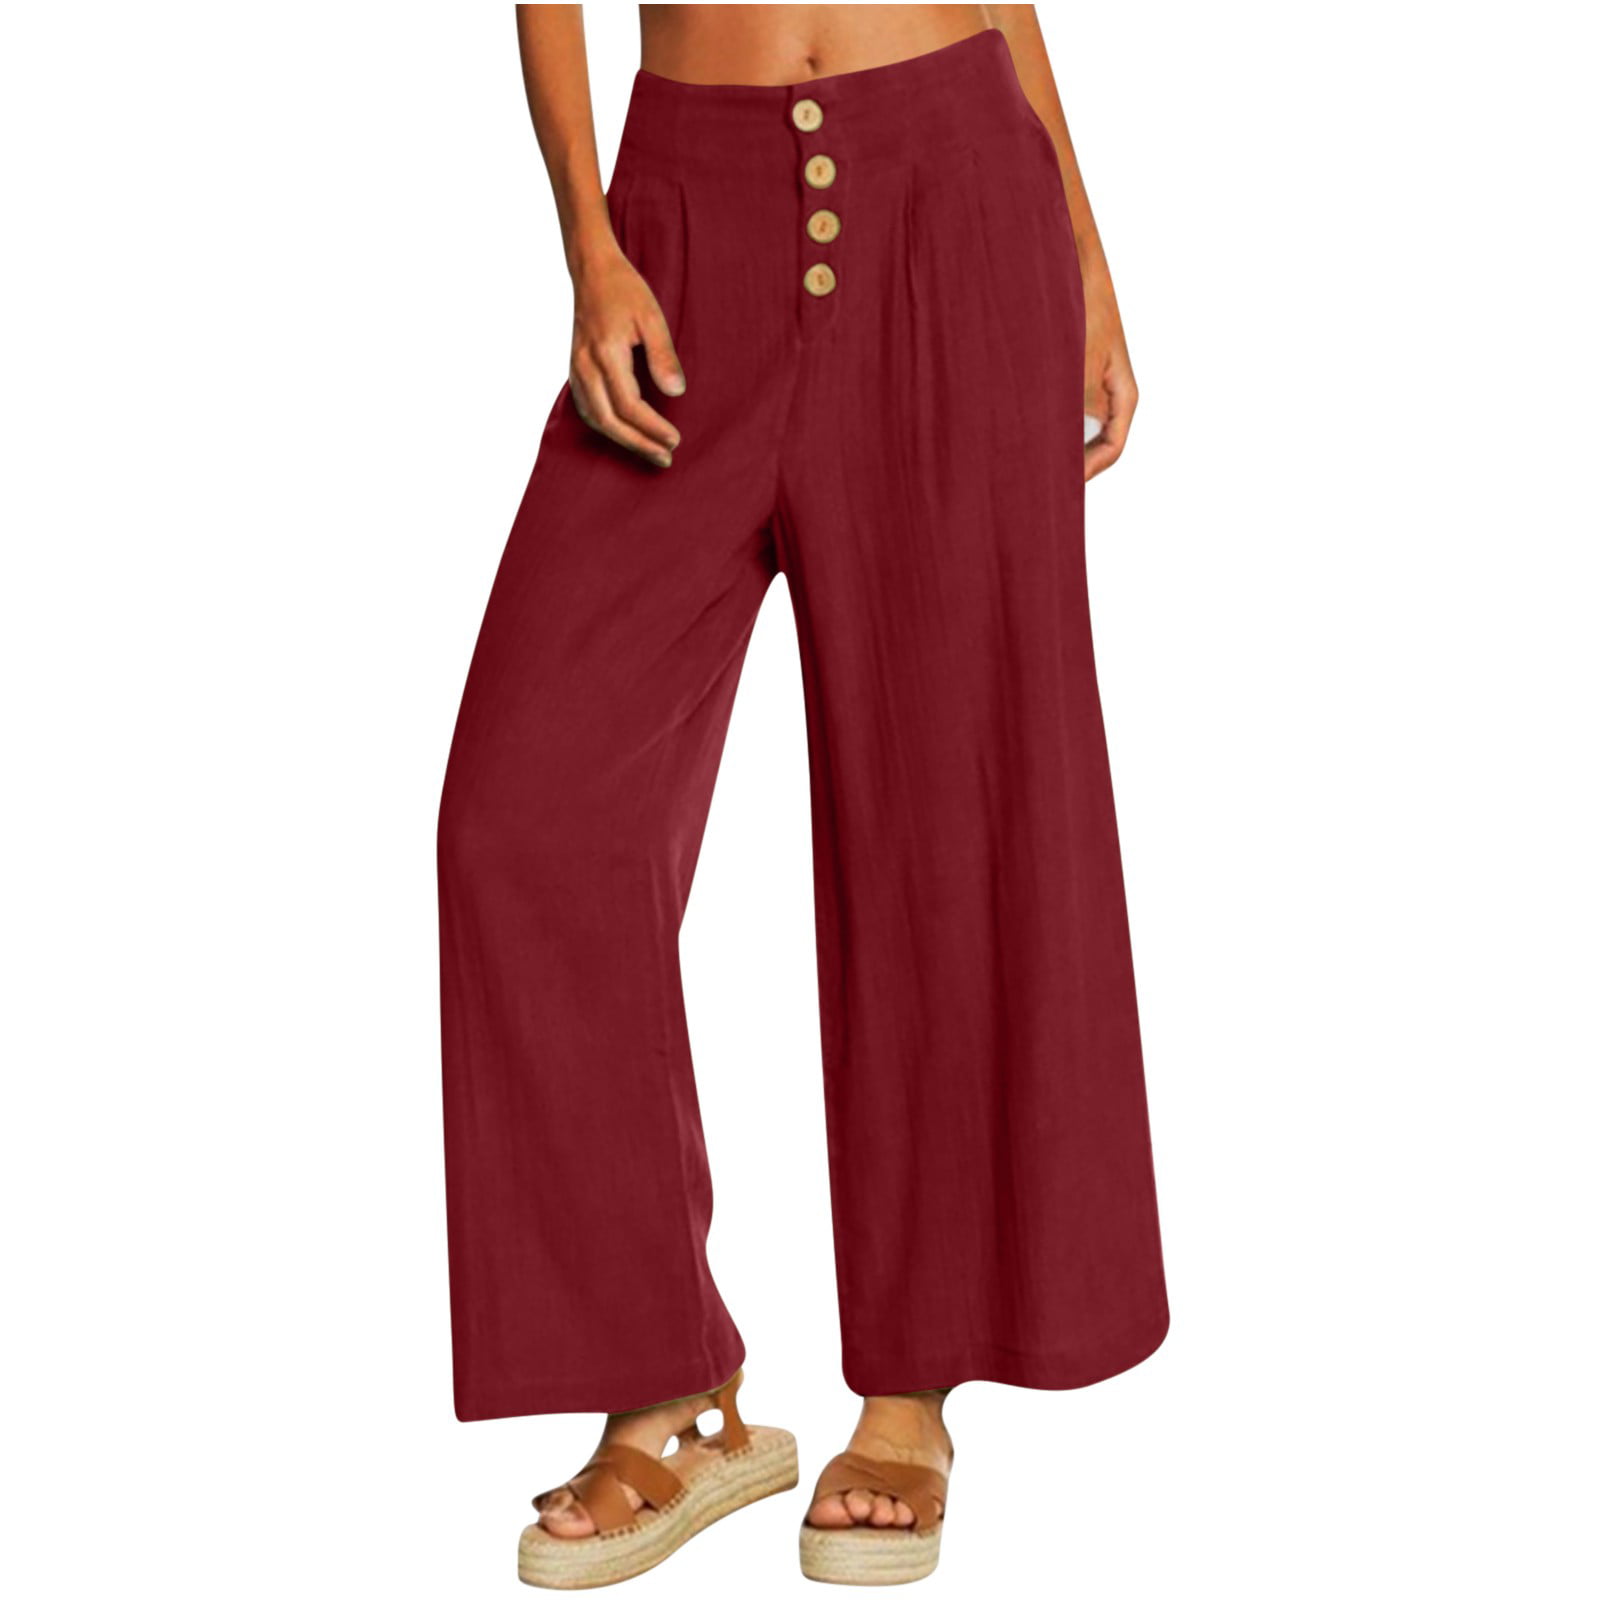 CZHJS Women's Solid Color Pants Clearance Baggy Slacks Light